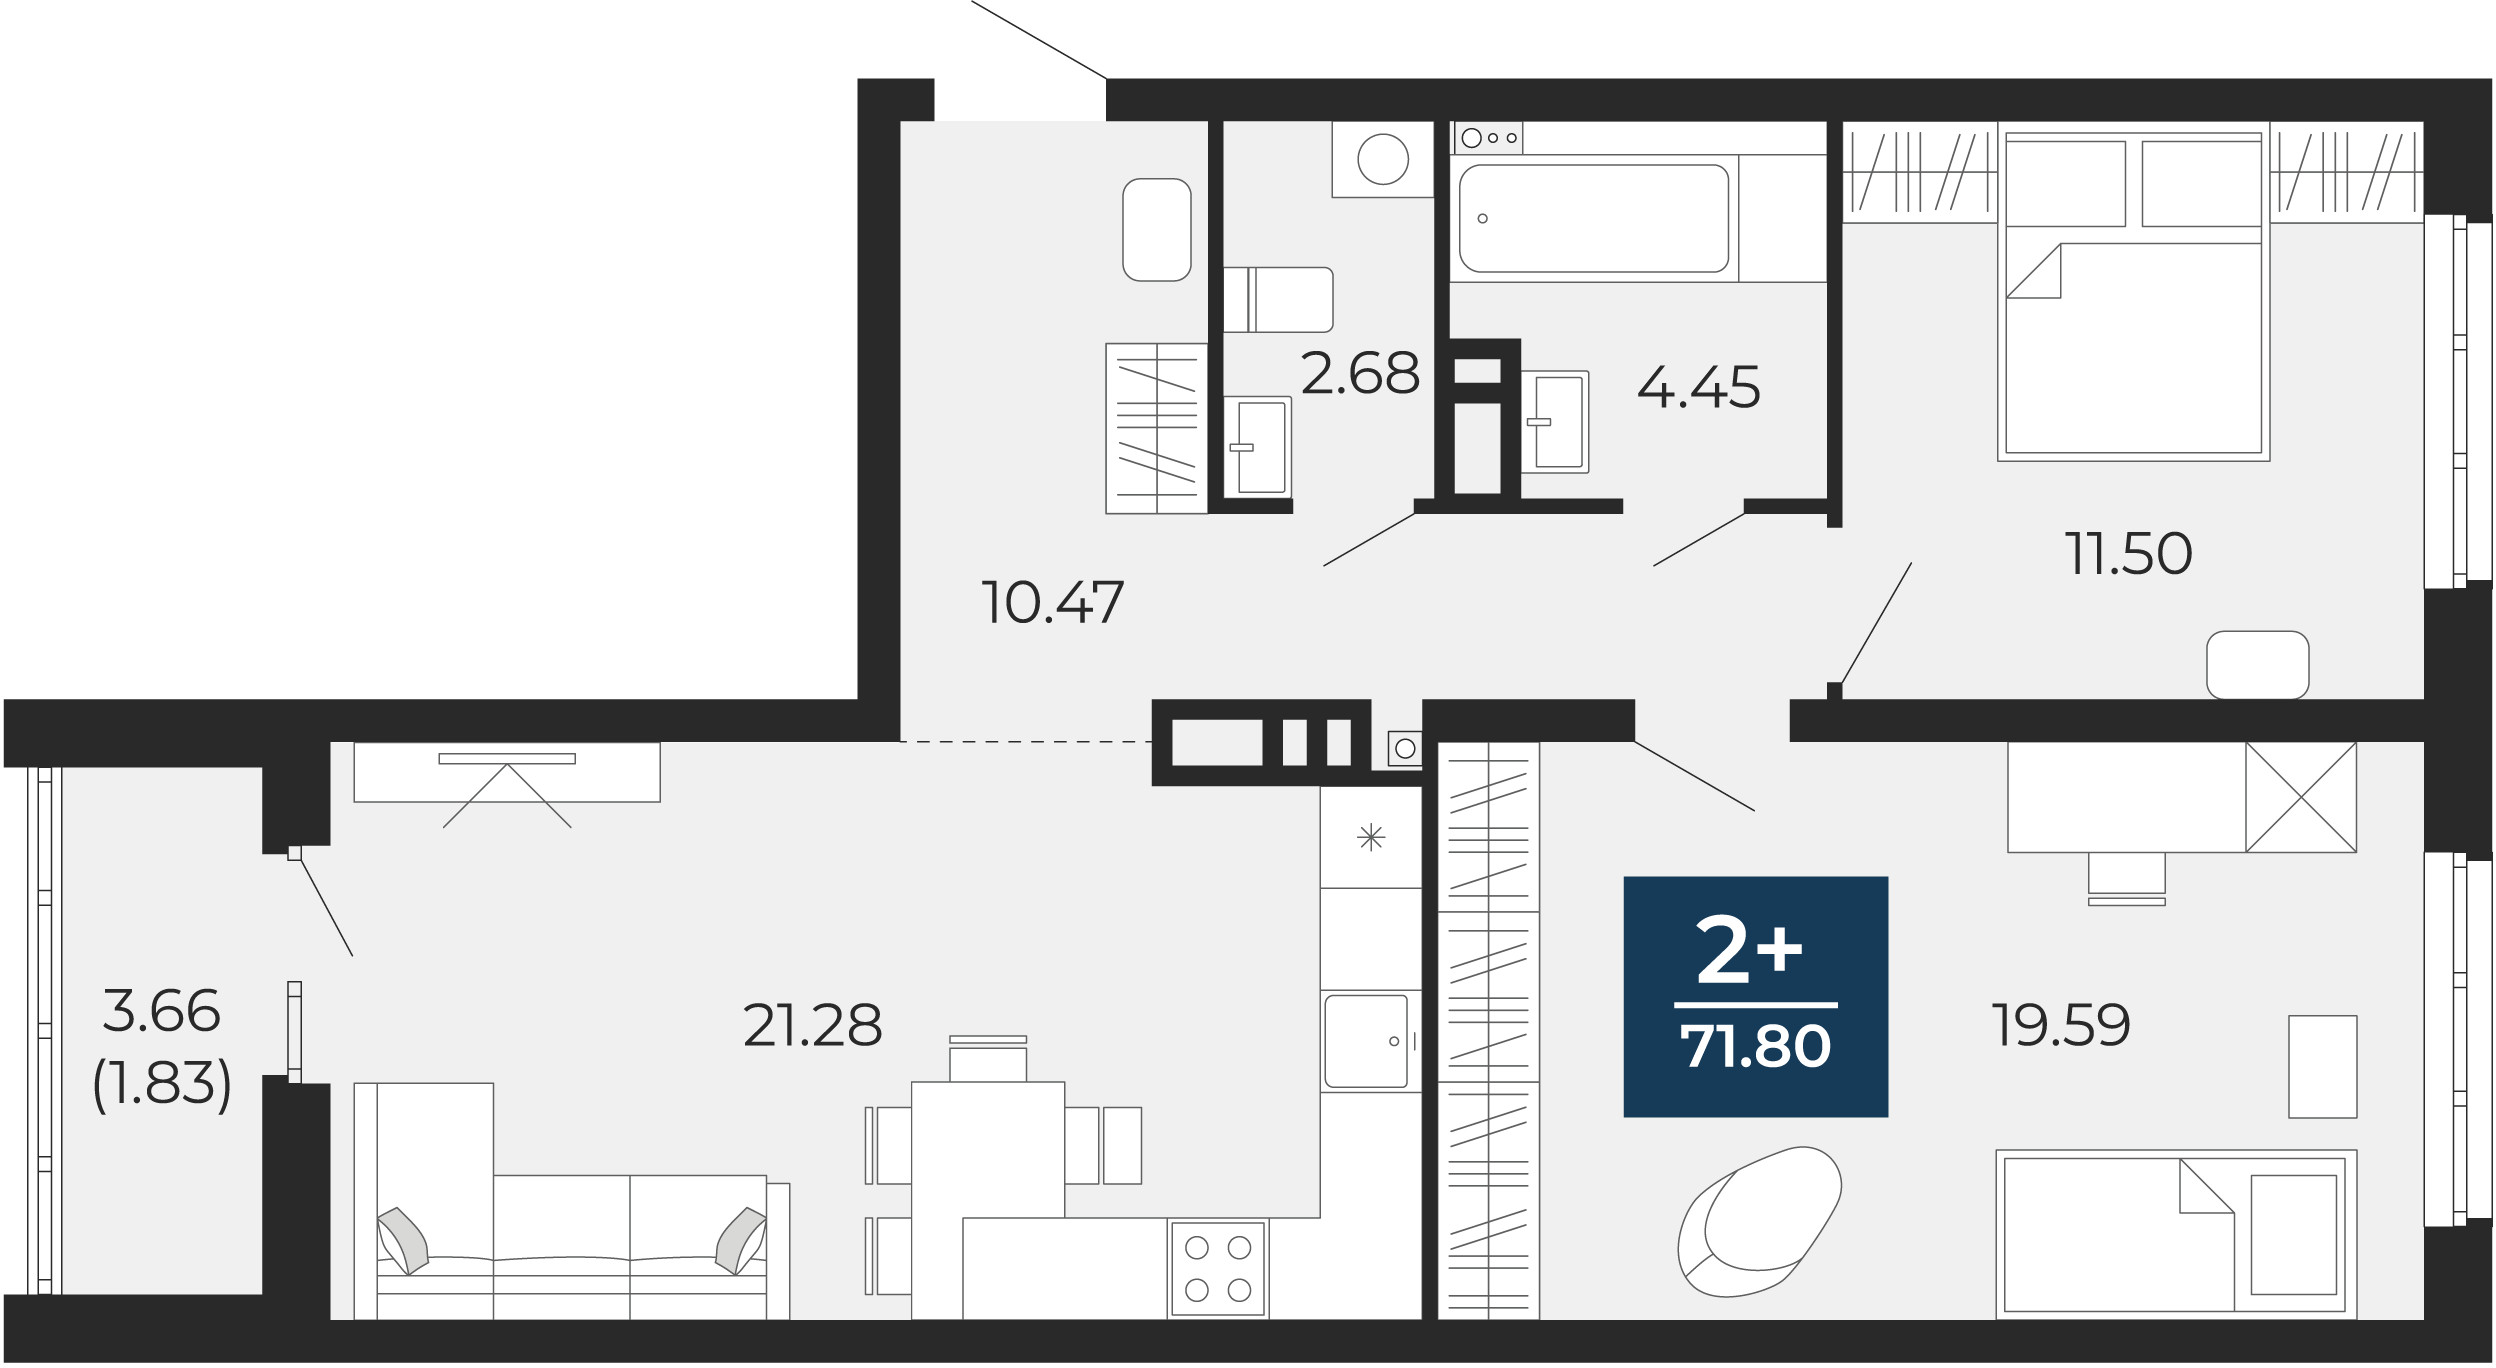 Квартира № 261, 2-комнатная, 71.8 кв. м, 9 этаж